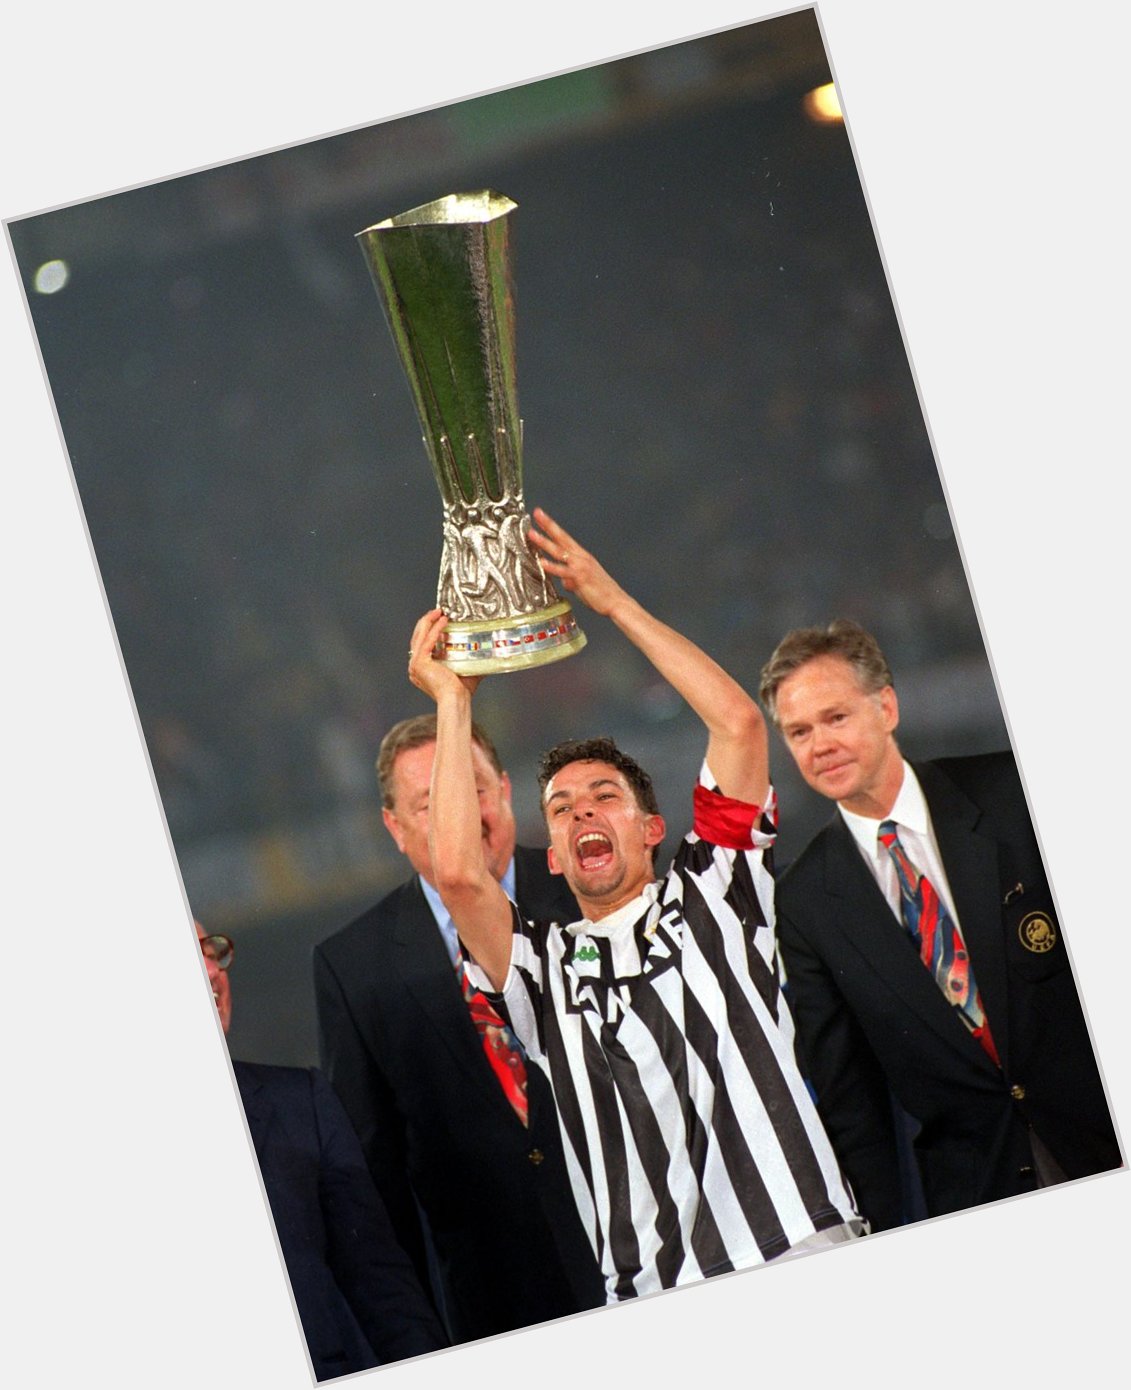 Happy birthday, 1993 UEFA Cup winner Roberto Baggio! 